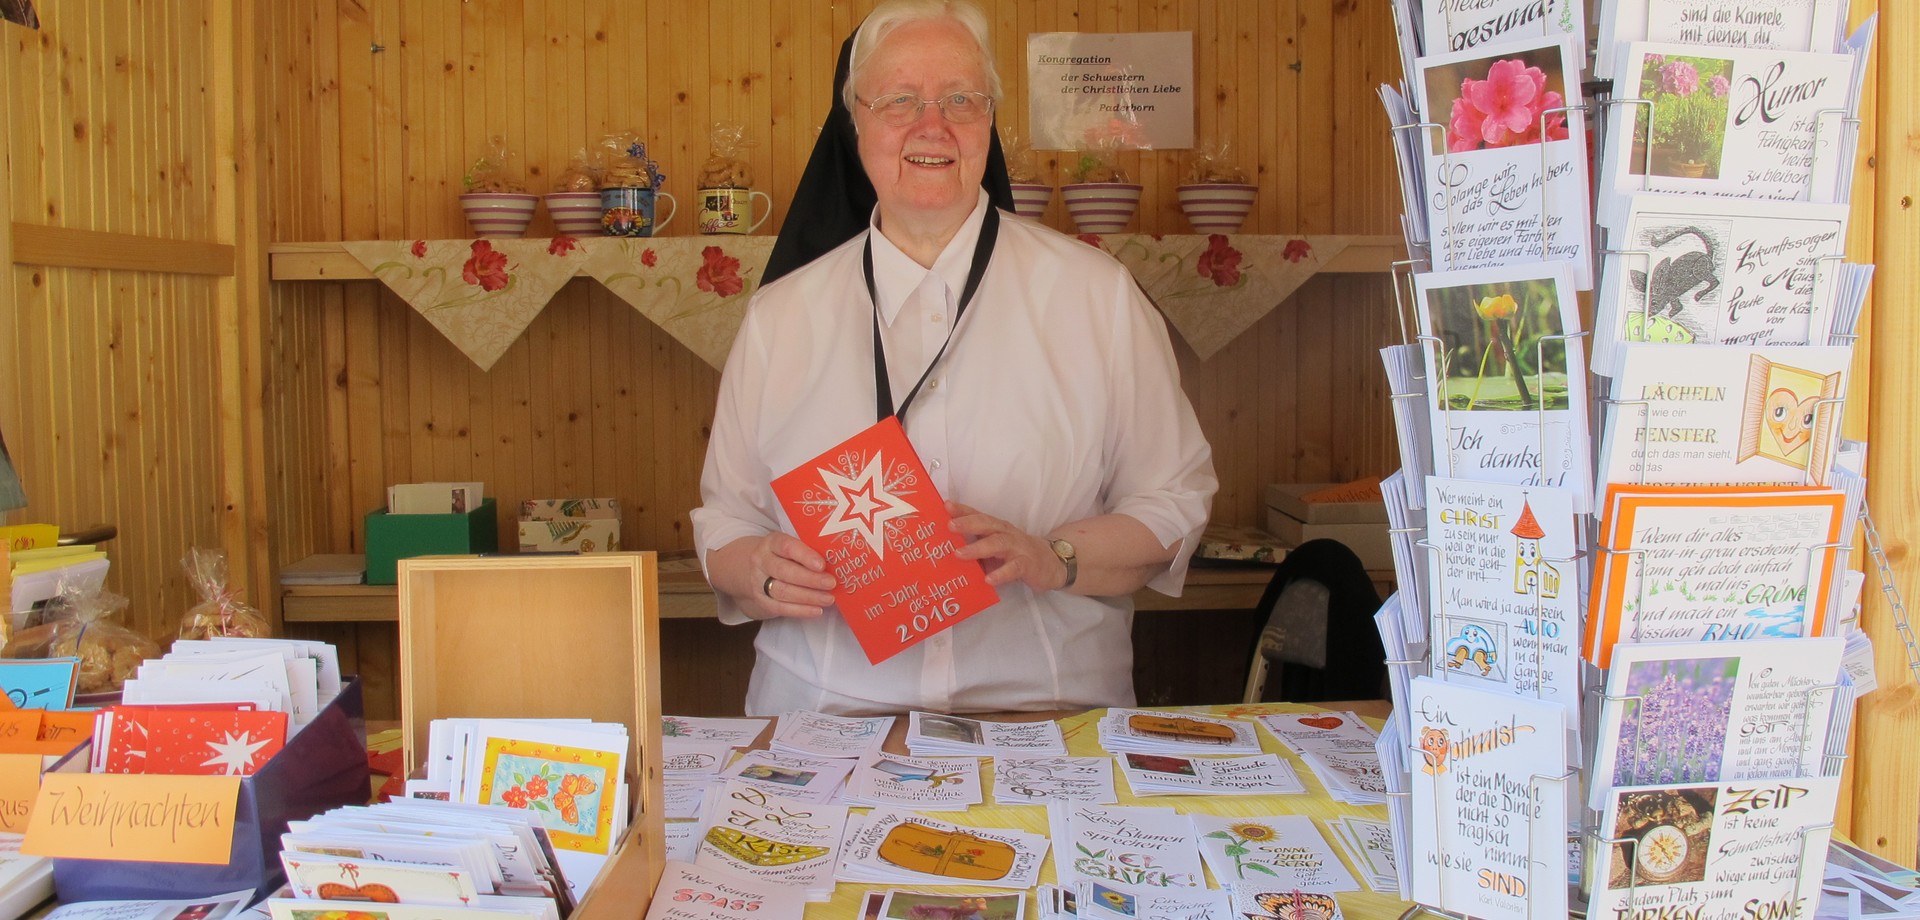 Auf dem Foto sieht man eine Ordensschwester, die am Klostermarktstand von Hand gefertigte Postkarten präsentiert.

Foto: LWL